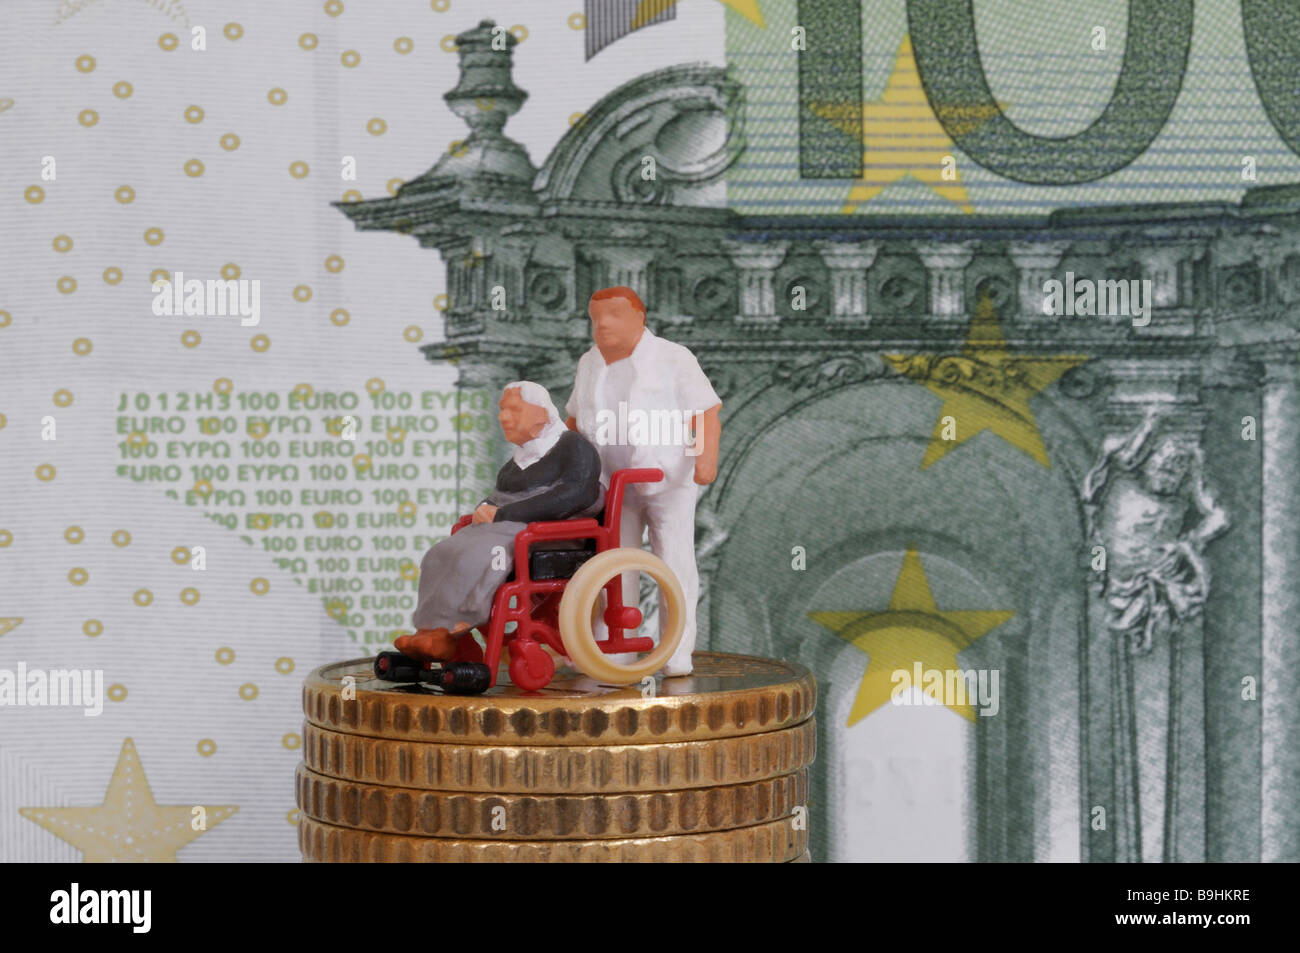 Infirmier en poussant une vieille personne en fauteuil roulant, figure sur une pile de pièces en face d'un projet de loi, 100 EUR pour une photo symbolique Banque D'Images